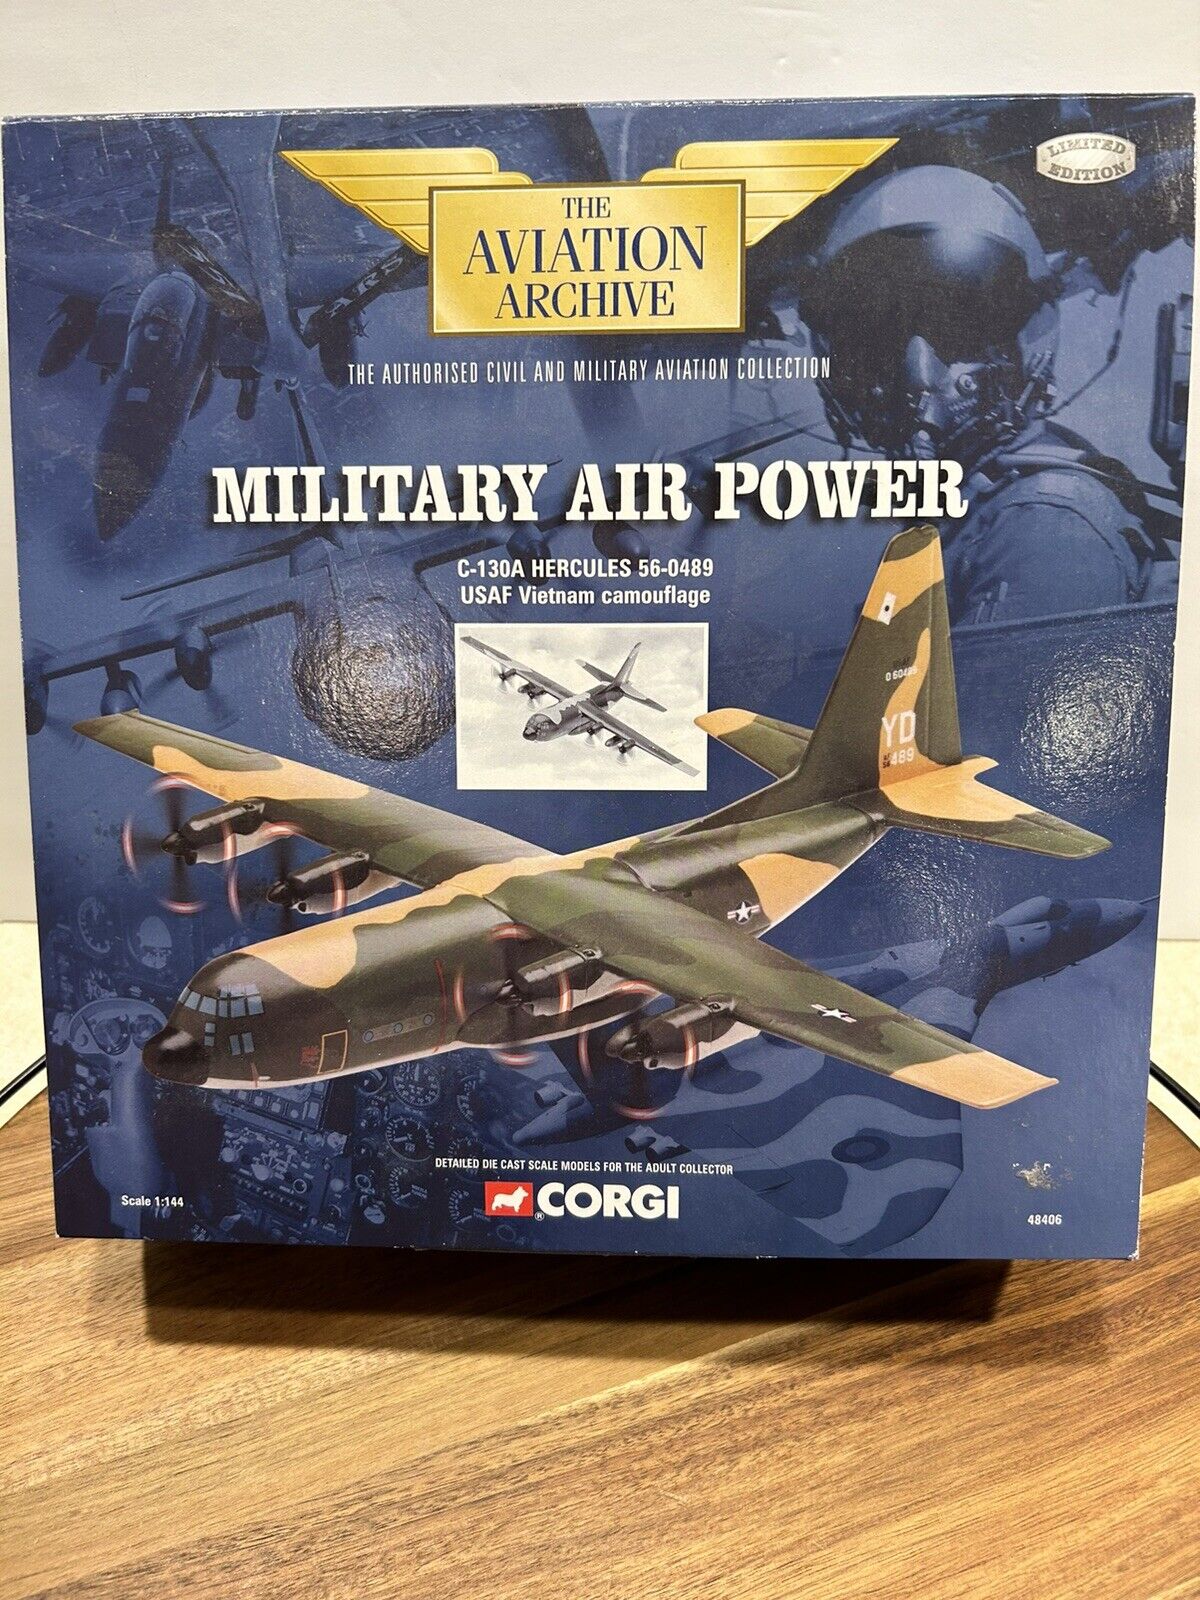 The Aviation Archive Military Air Power C130-a Hercules 56-0488 CORGI